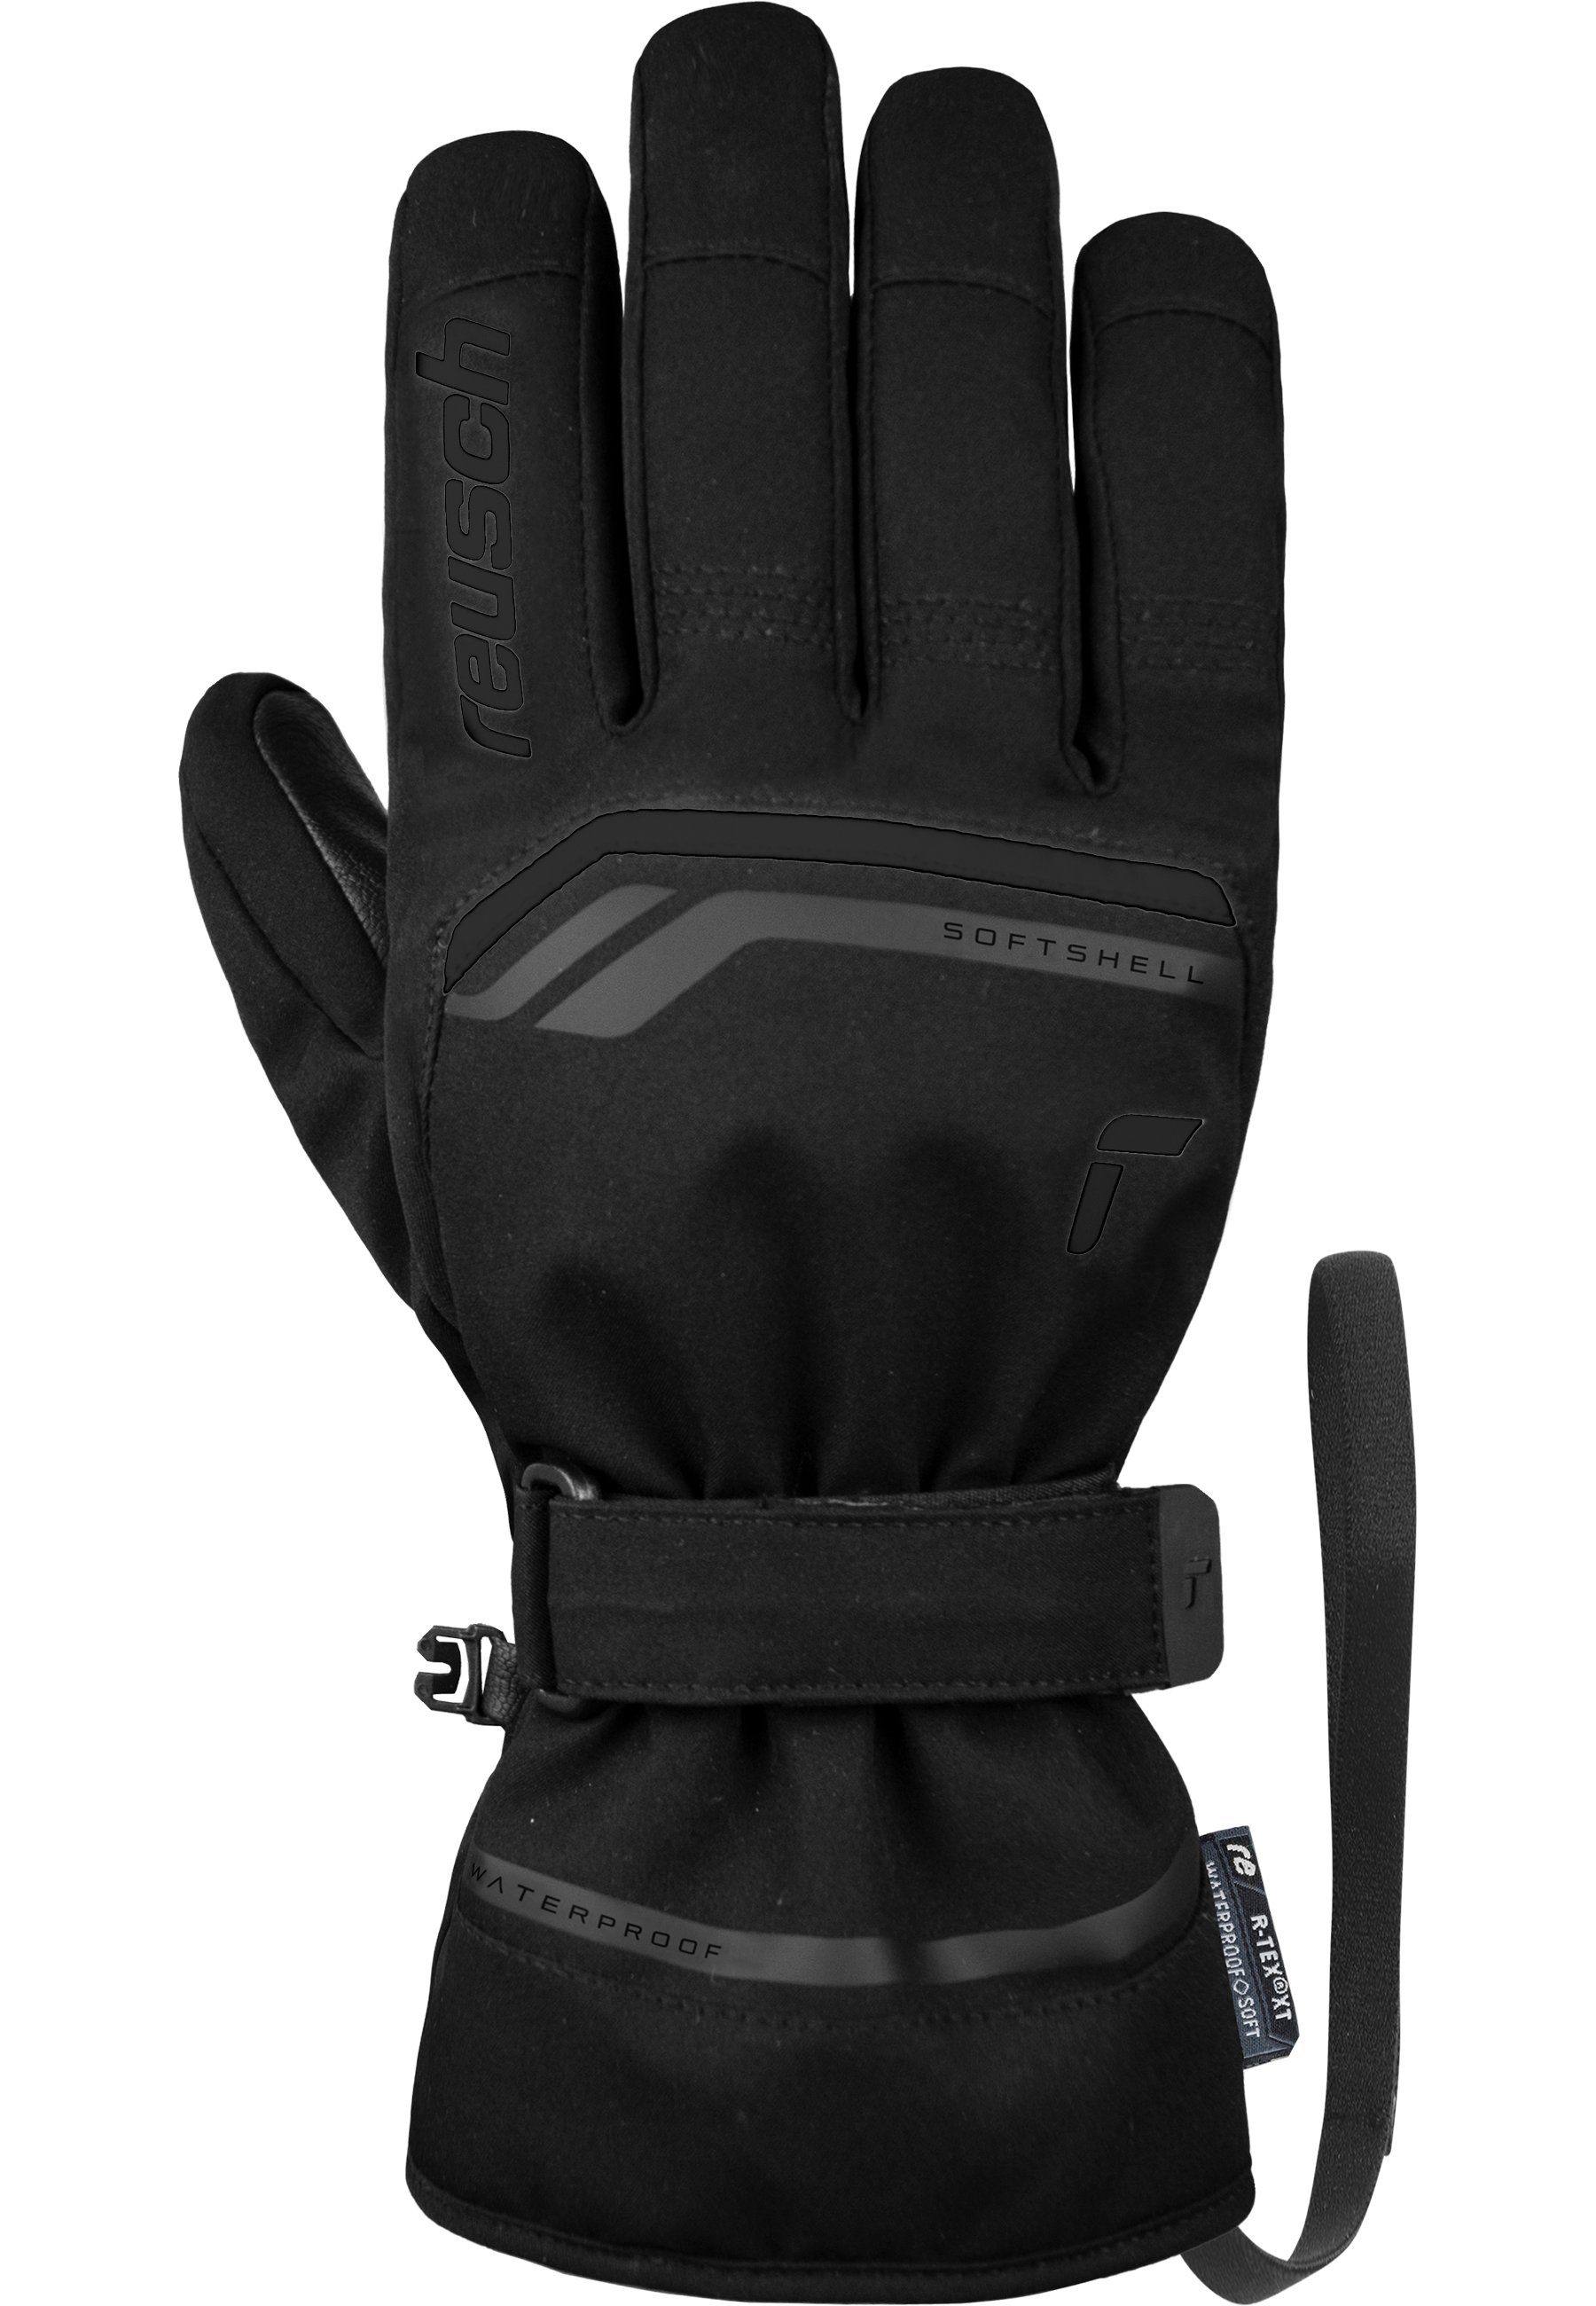 schwarz Skihandschuhe R-TEX® atmungsaktiv warm, und sehr XT wasserdicht Reusch Primus